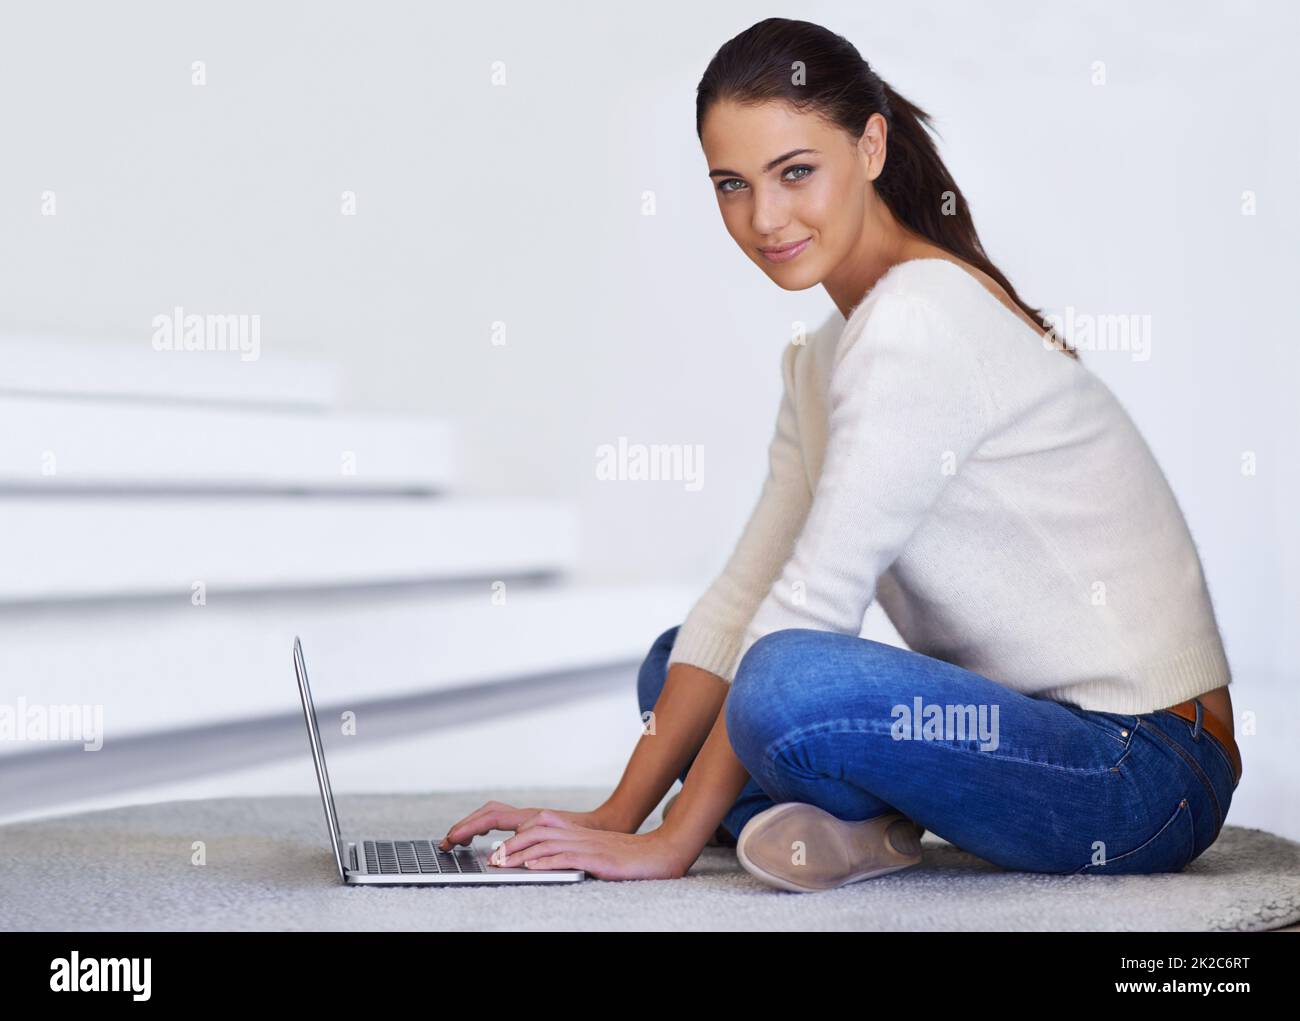 Komfortable Konnektivität. Eine schöne junge Frau, die auf ihrem Boden sitzt und einen Laptop benutzt. Stockfoto